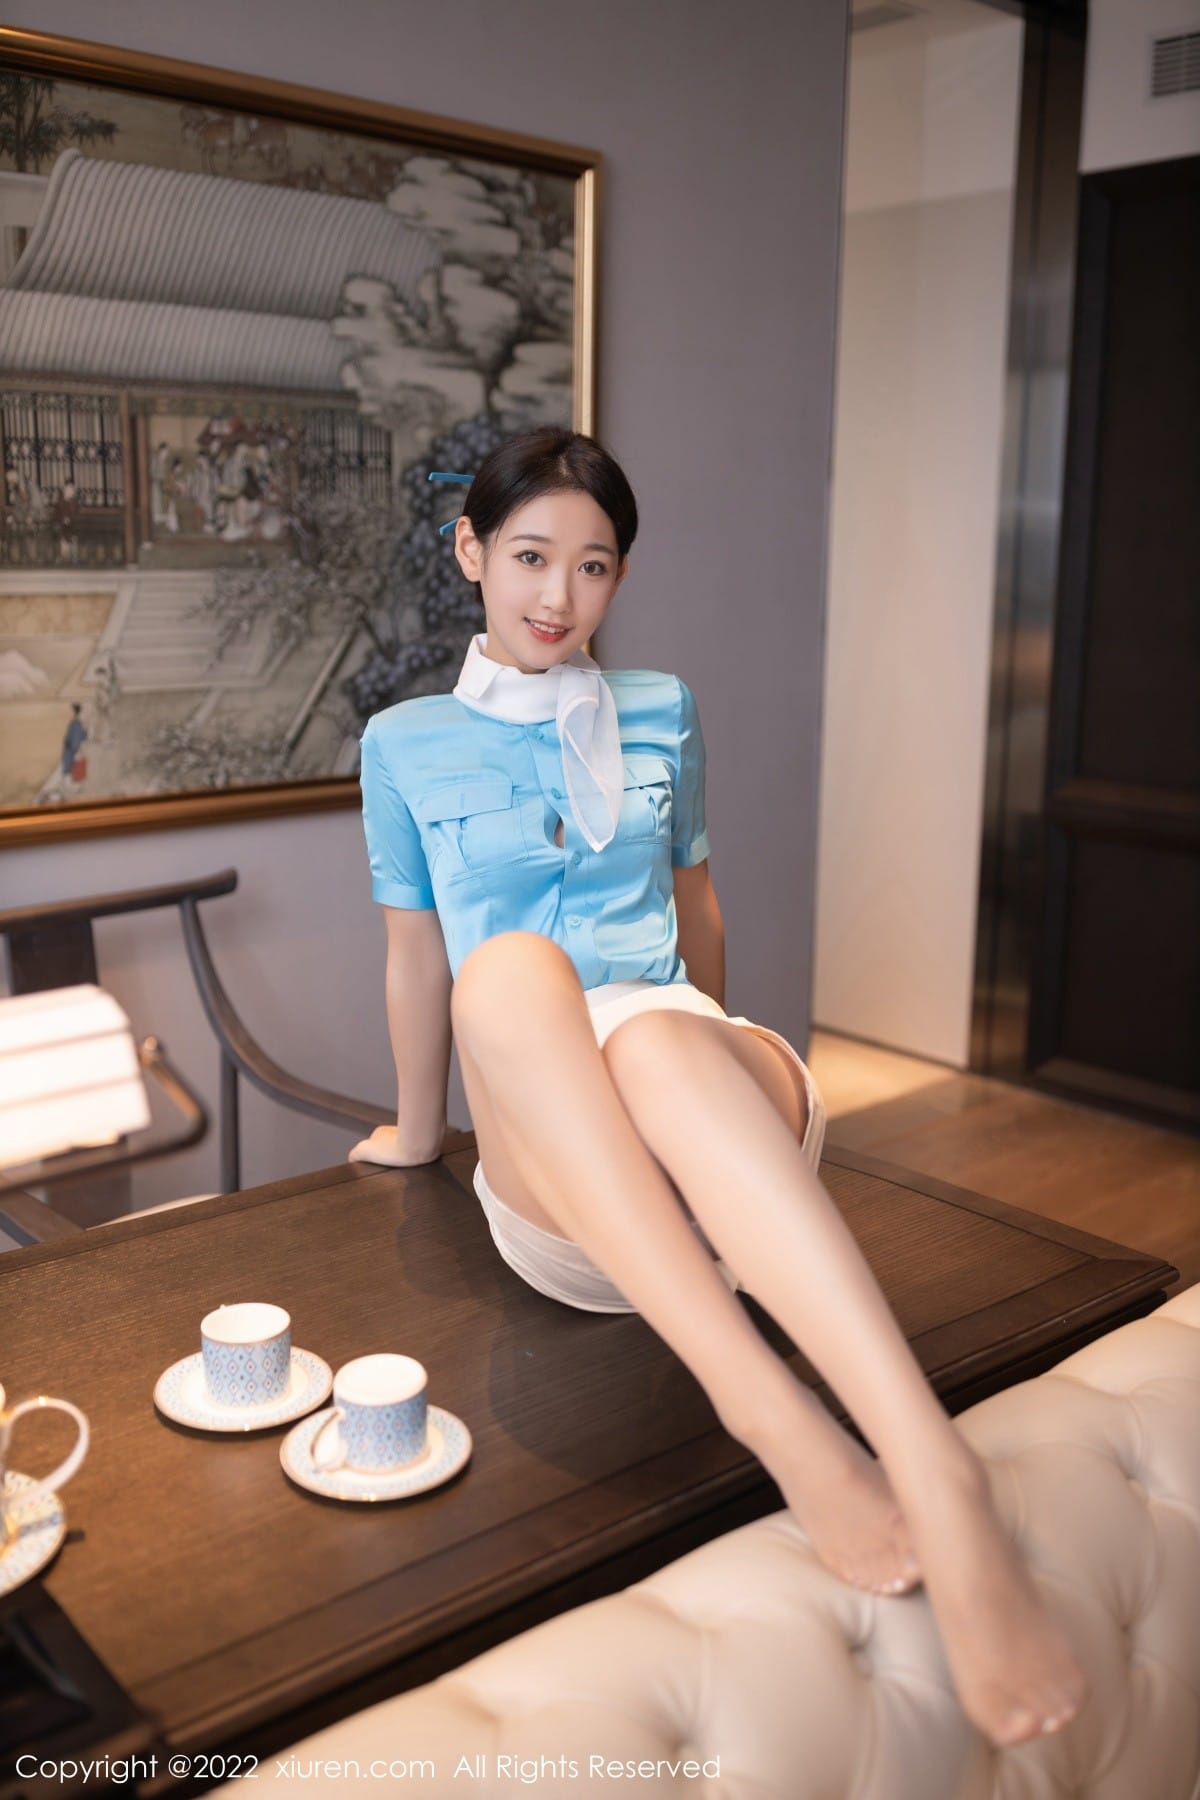 美女模特唐安琪天蓝色空姐制服搭配原色丝袜写真